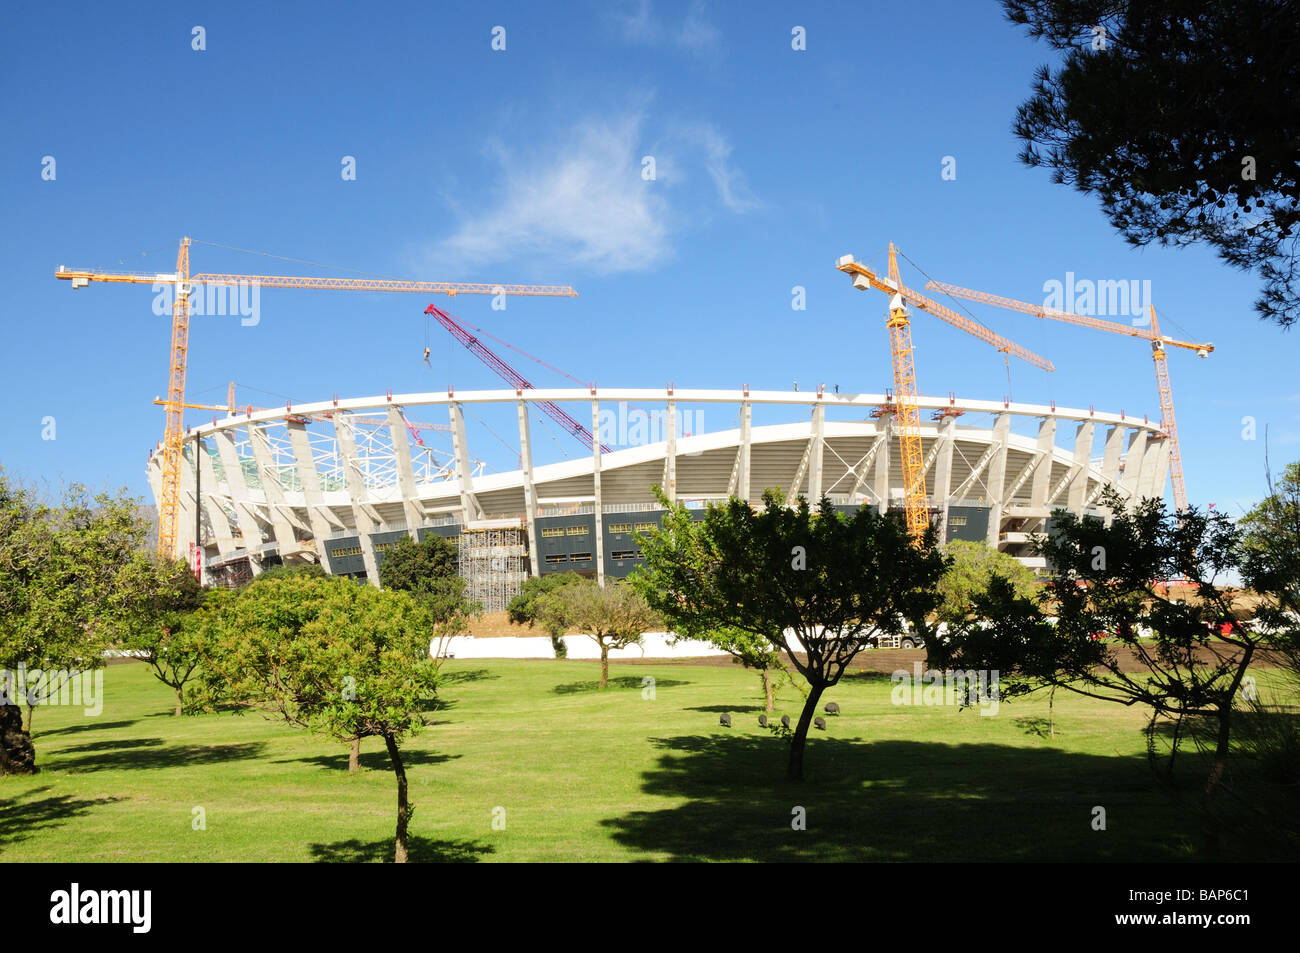 Le Green Point Stadium en construction à Cape Town pour la coupe du monde de football 2010 Afrique du Sud Banque D'Images